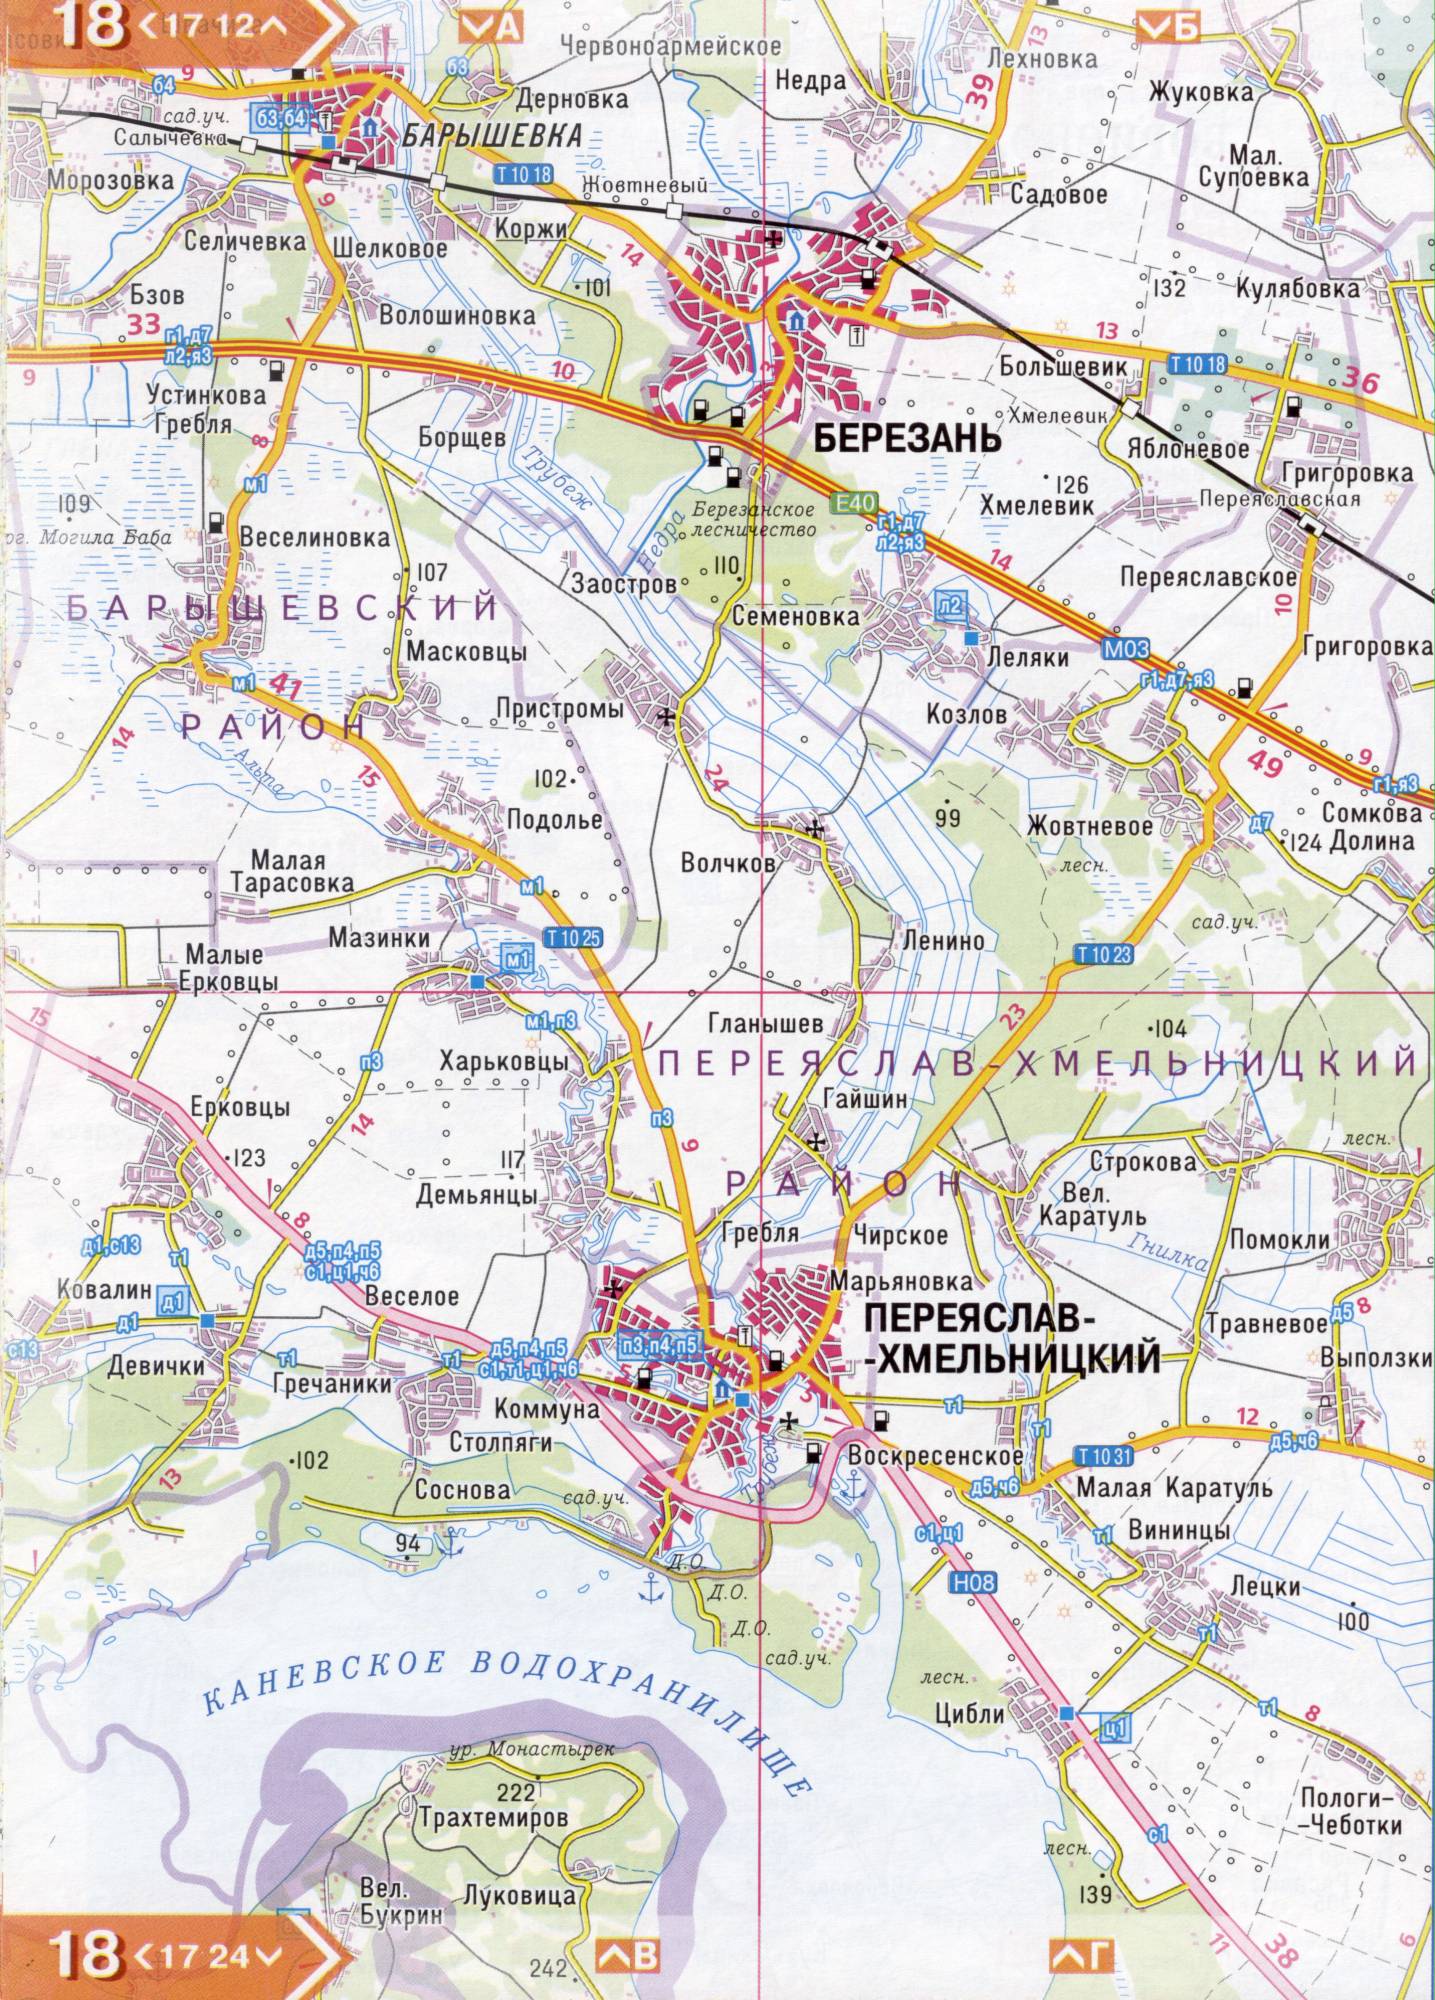 Атлас Киевской области. Подробная карта Киевской области из атласа автодорог. Киевская область на подробной карте масштаба 1см=3км. Скачать бесплатно , E3